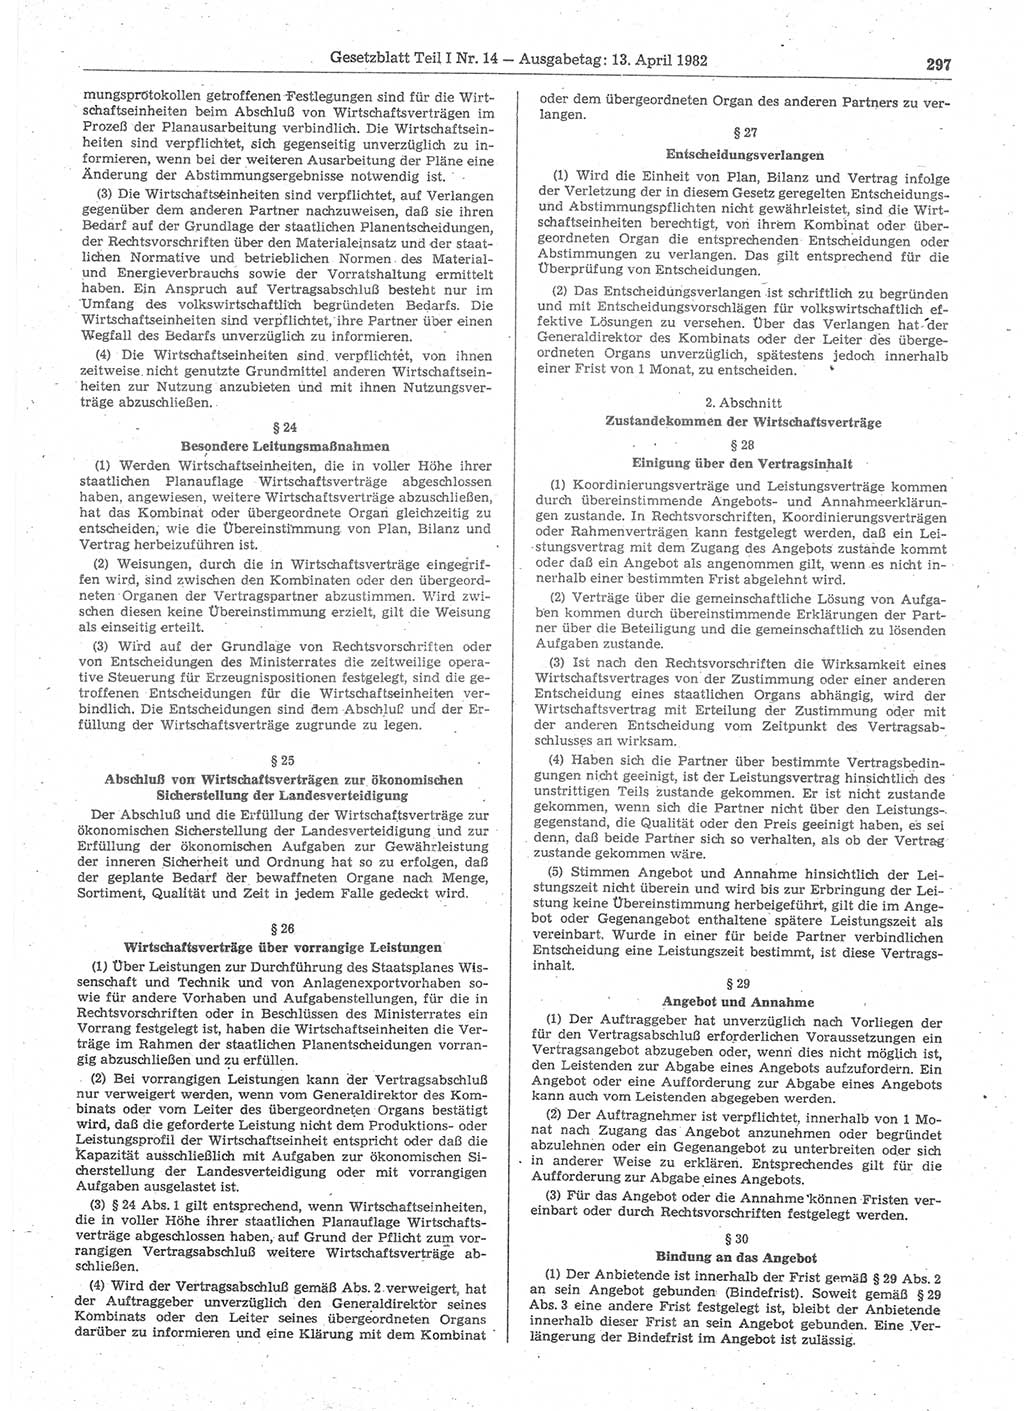 Gesetzblatt (GBl.) der Deutschen Demokratischen Republik (DDR) Teil Ⅰ 1982, Seite 297 (GBl. DDR Ⅰ 1982, S. 297)